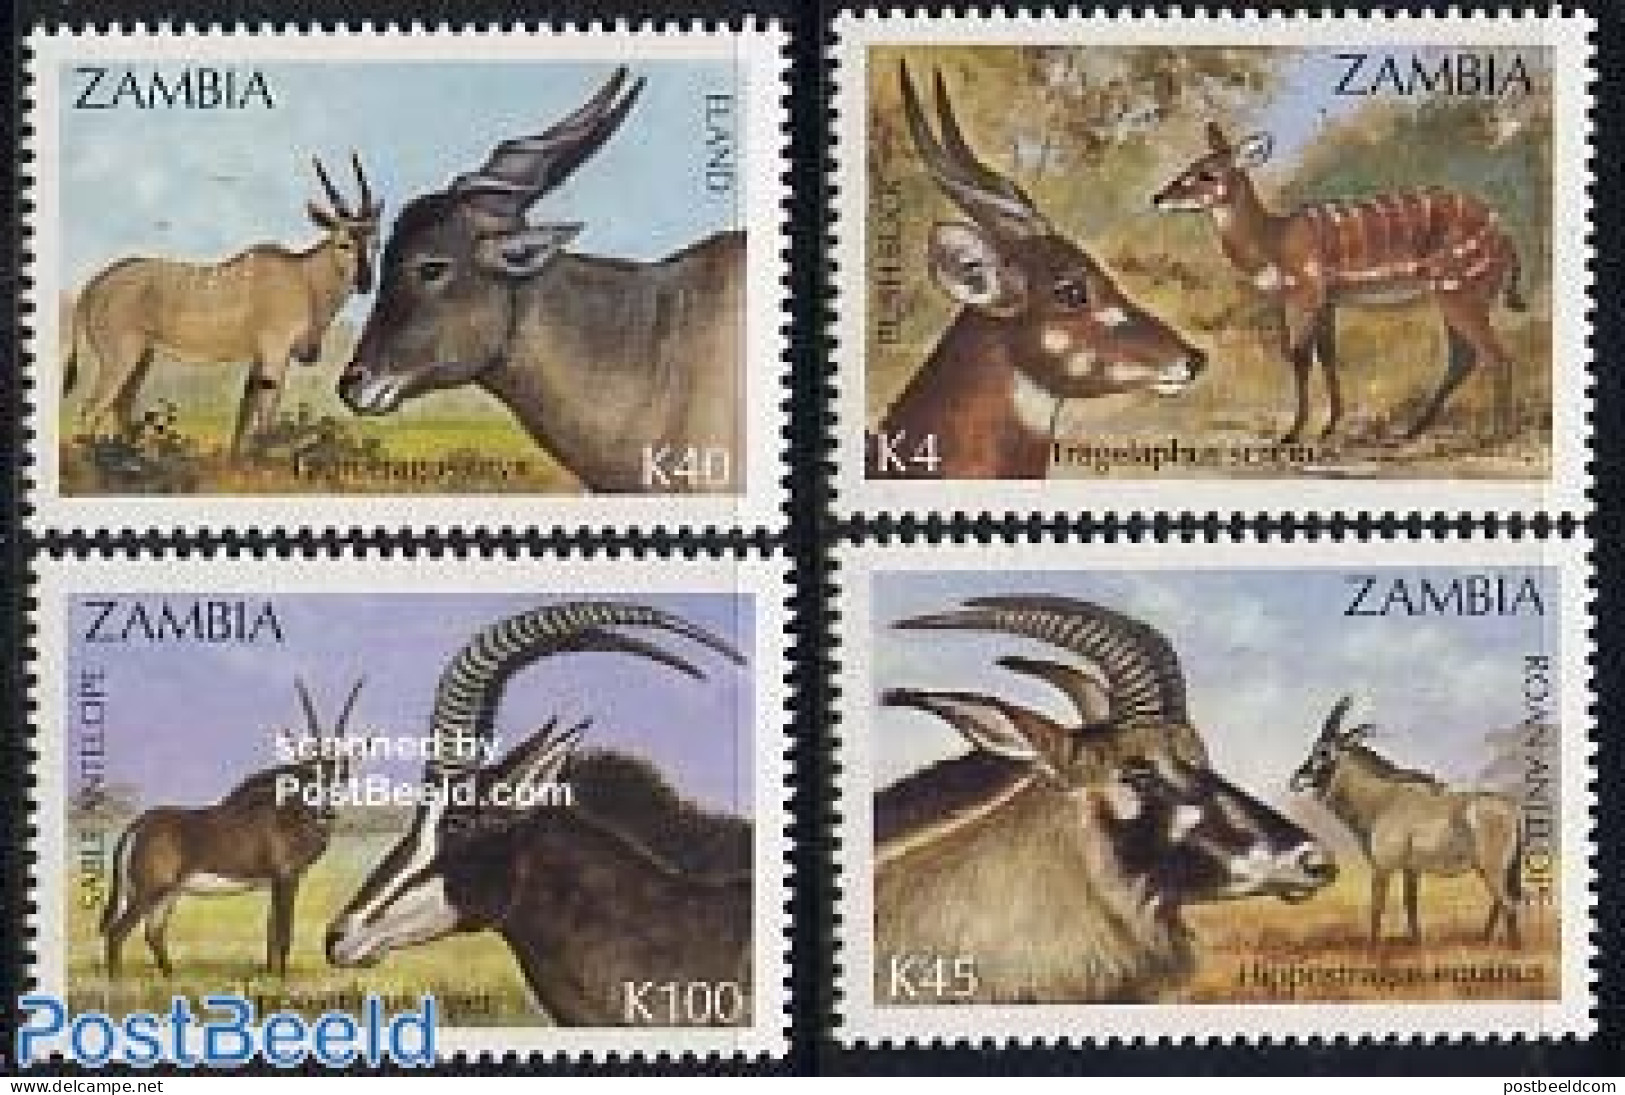 Zambia 1992 Antelopes 4v, Mint NH, Nature - Animals (others & Mixed) - Zambie (1965-...)